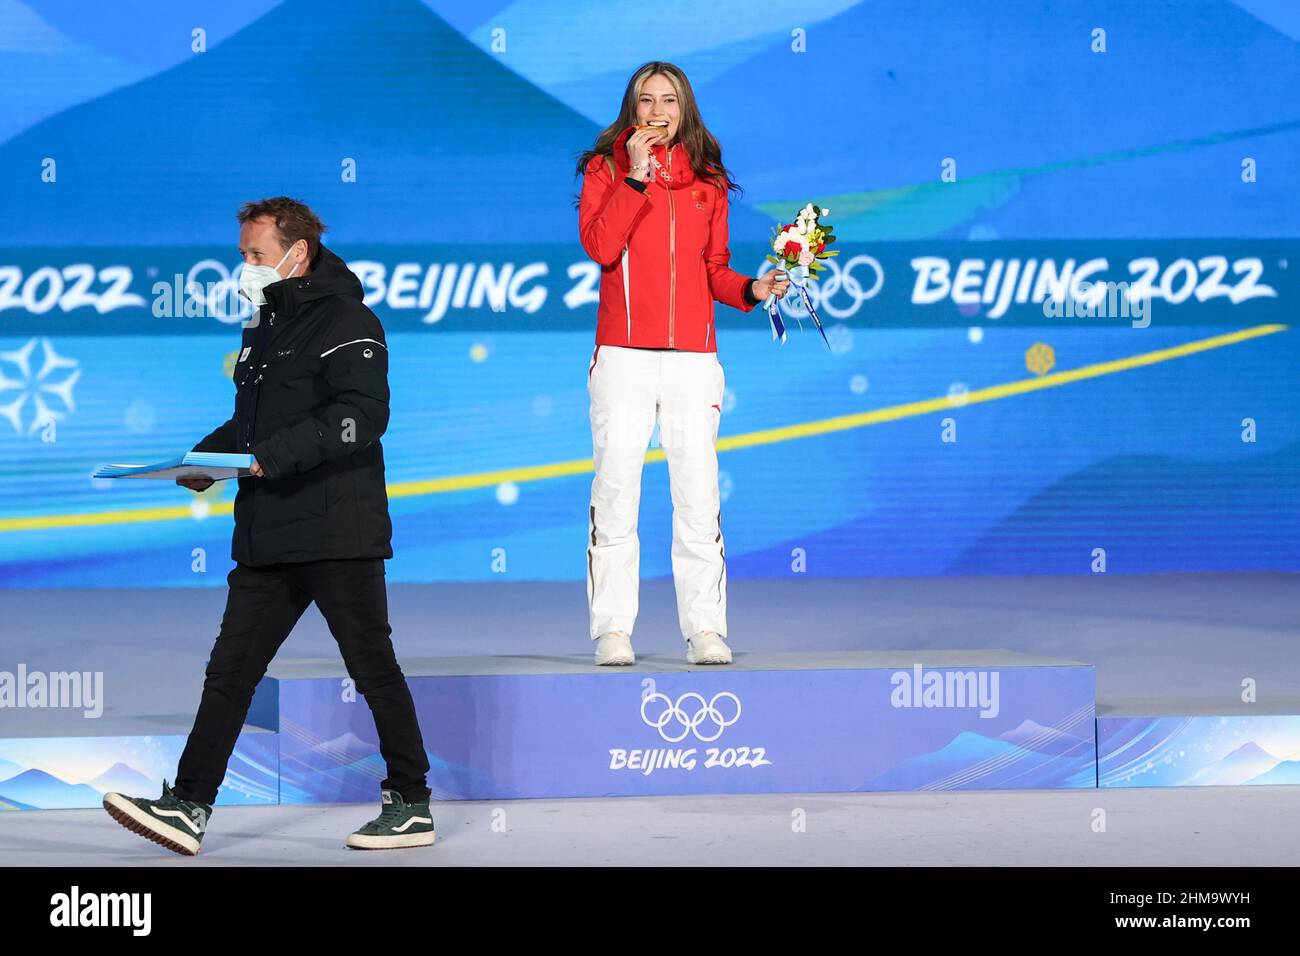 Medaglia d'oro di Eileen GU (CHN) durante i Giochi Olimpici invernali di Pechino 2022, Sci Freestyle, Femminile Freeski Big Air il 8 febbraio 2022 a Pechino, Cina - Foto: Osports/DPPI/LiveMedia Foto Stock